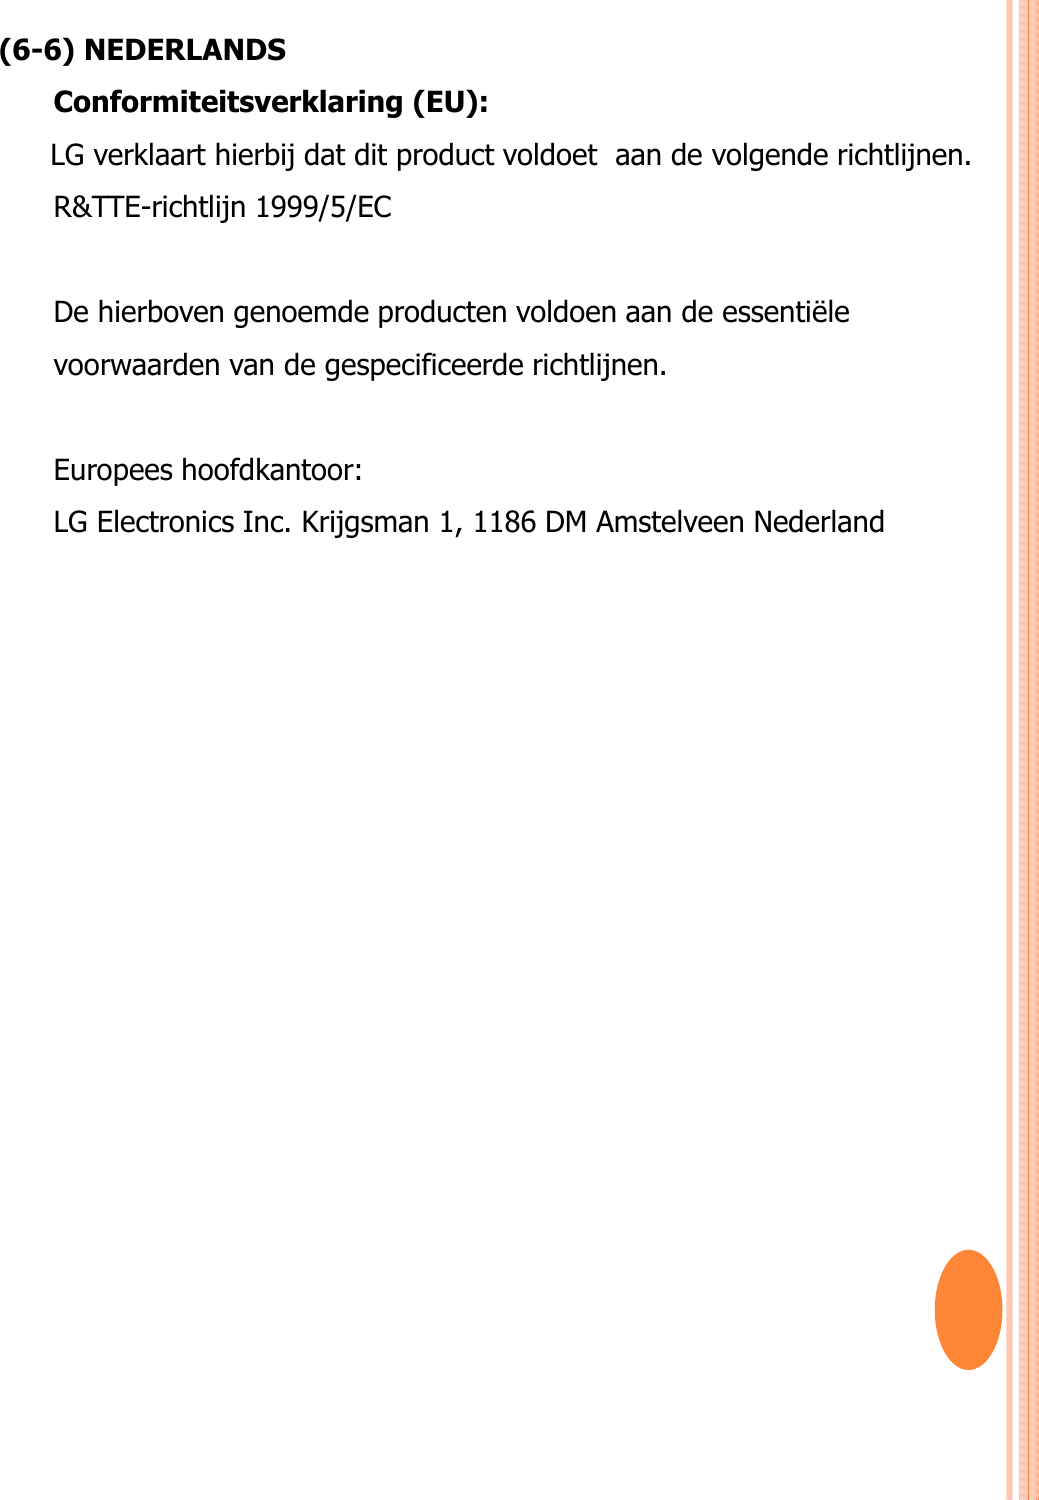 (6-6) NEDERLANDS Conformiteitsverklaring (EU): LG verklaart hierbij dat dit product voldoet  aan de volgende richtlijnen. R&amp;TTE-richtlijn 1999/5/EC De hierboven genoemde producten voldoen aan de essentiële voorwaarden van de gespecificeerde richtlijnen.Europees hoofdkantoor: LG Electronics Inc. Krijgsman 1, 1186 DM Amstelveen Nederland 